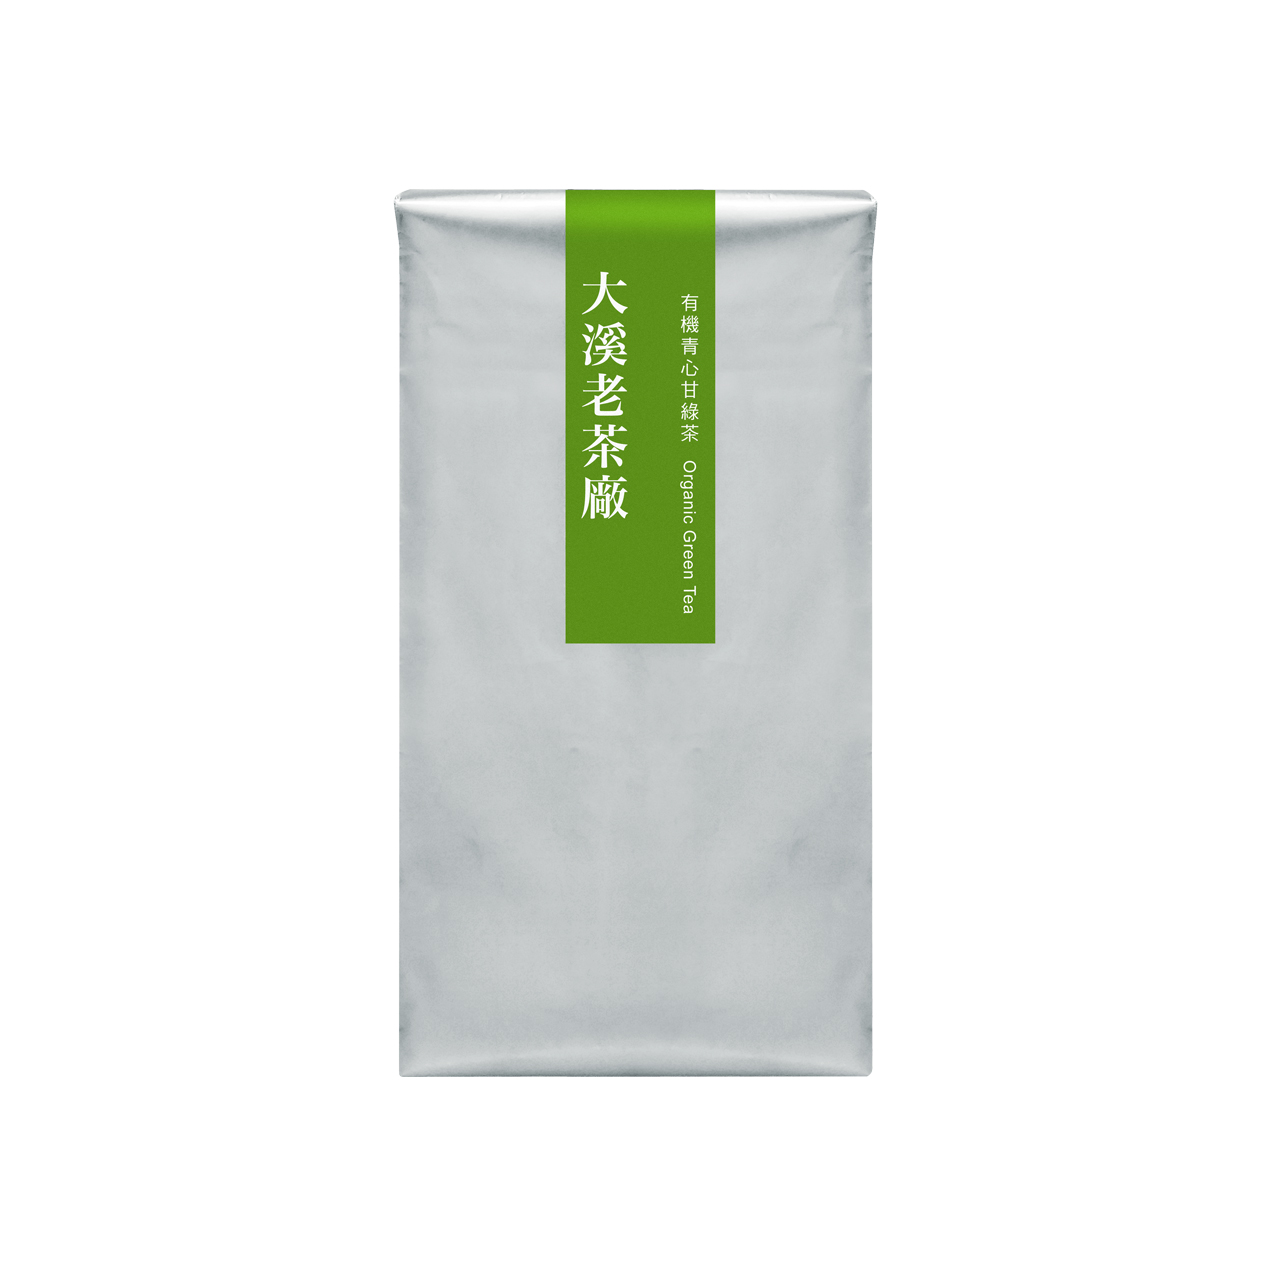 大溪-有機青心甘綠茶 補充包 90g